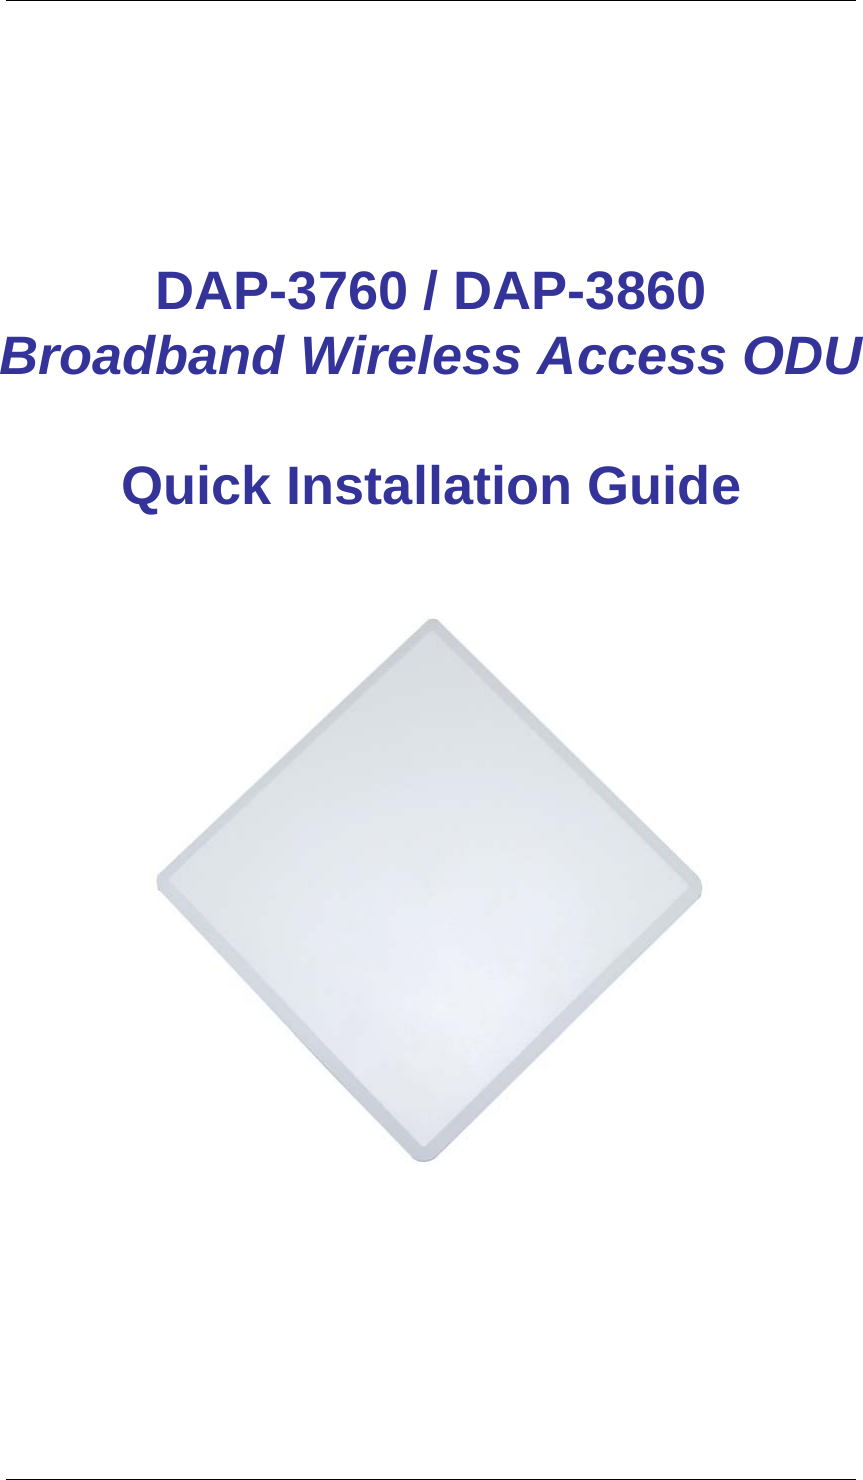        DAP-3760 / DAP-3860 Broadband Wireless Access ODU    Quick Installation Guide      